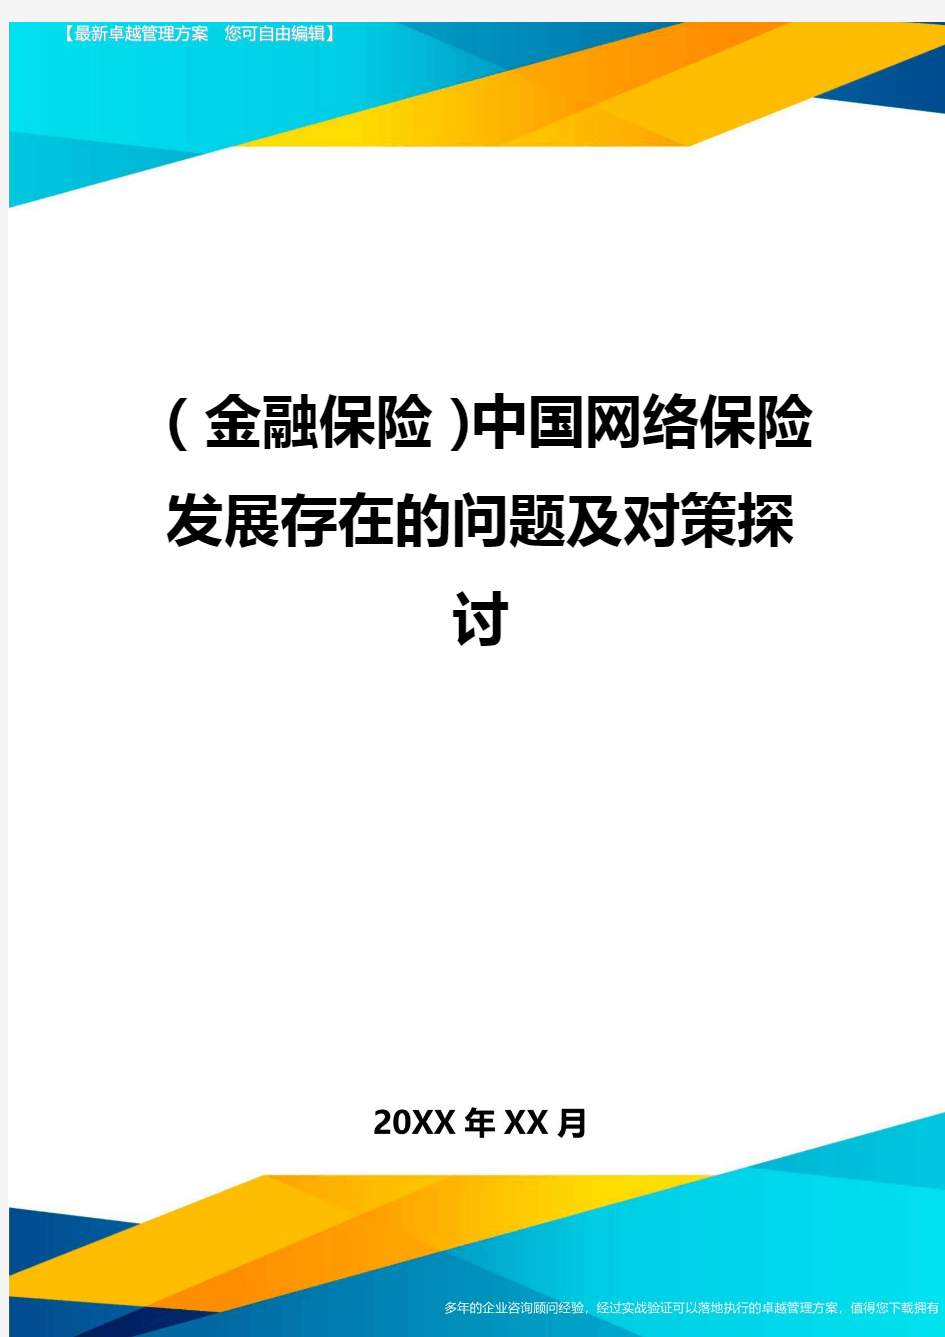 2020年(金融保险)中国网络保险发展存在的问题及对策探讨